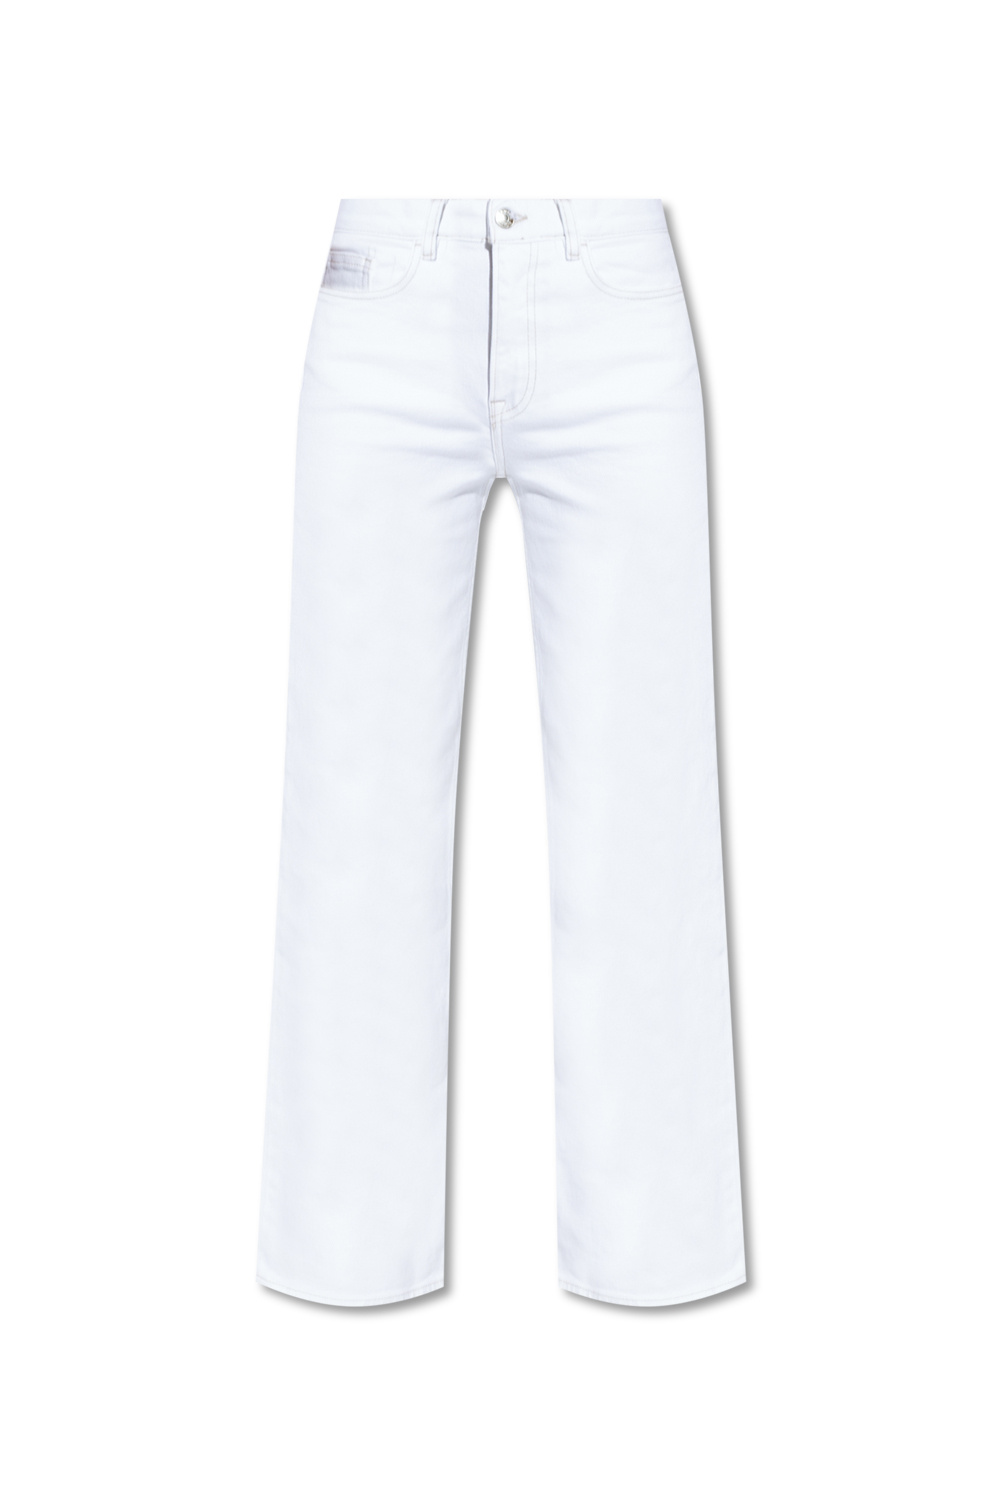 Samsøe Samsøe ‘Riley’ jeans